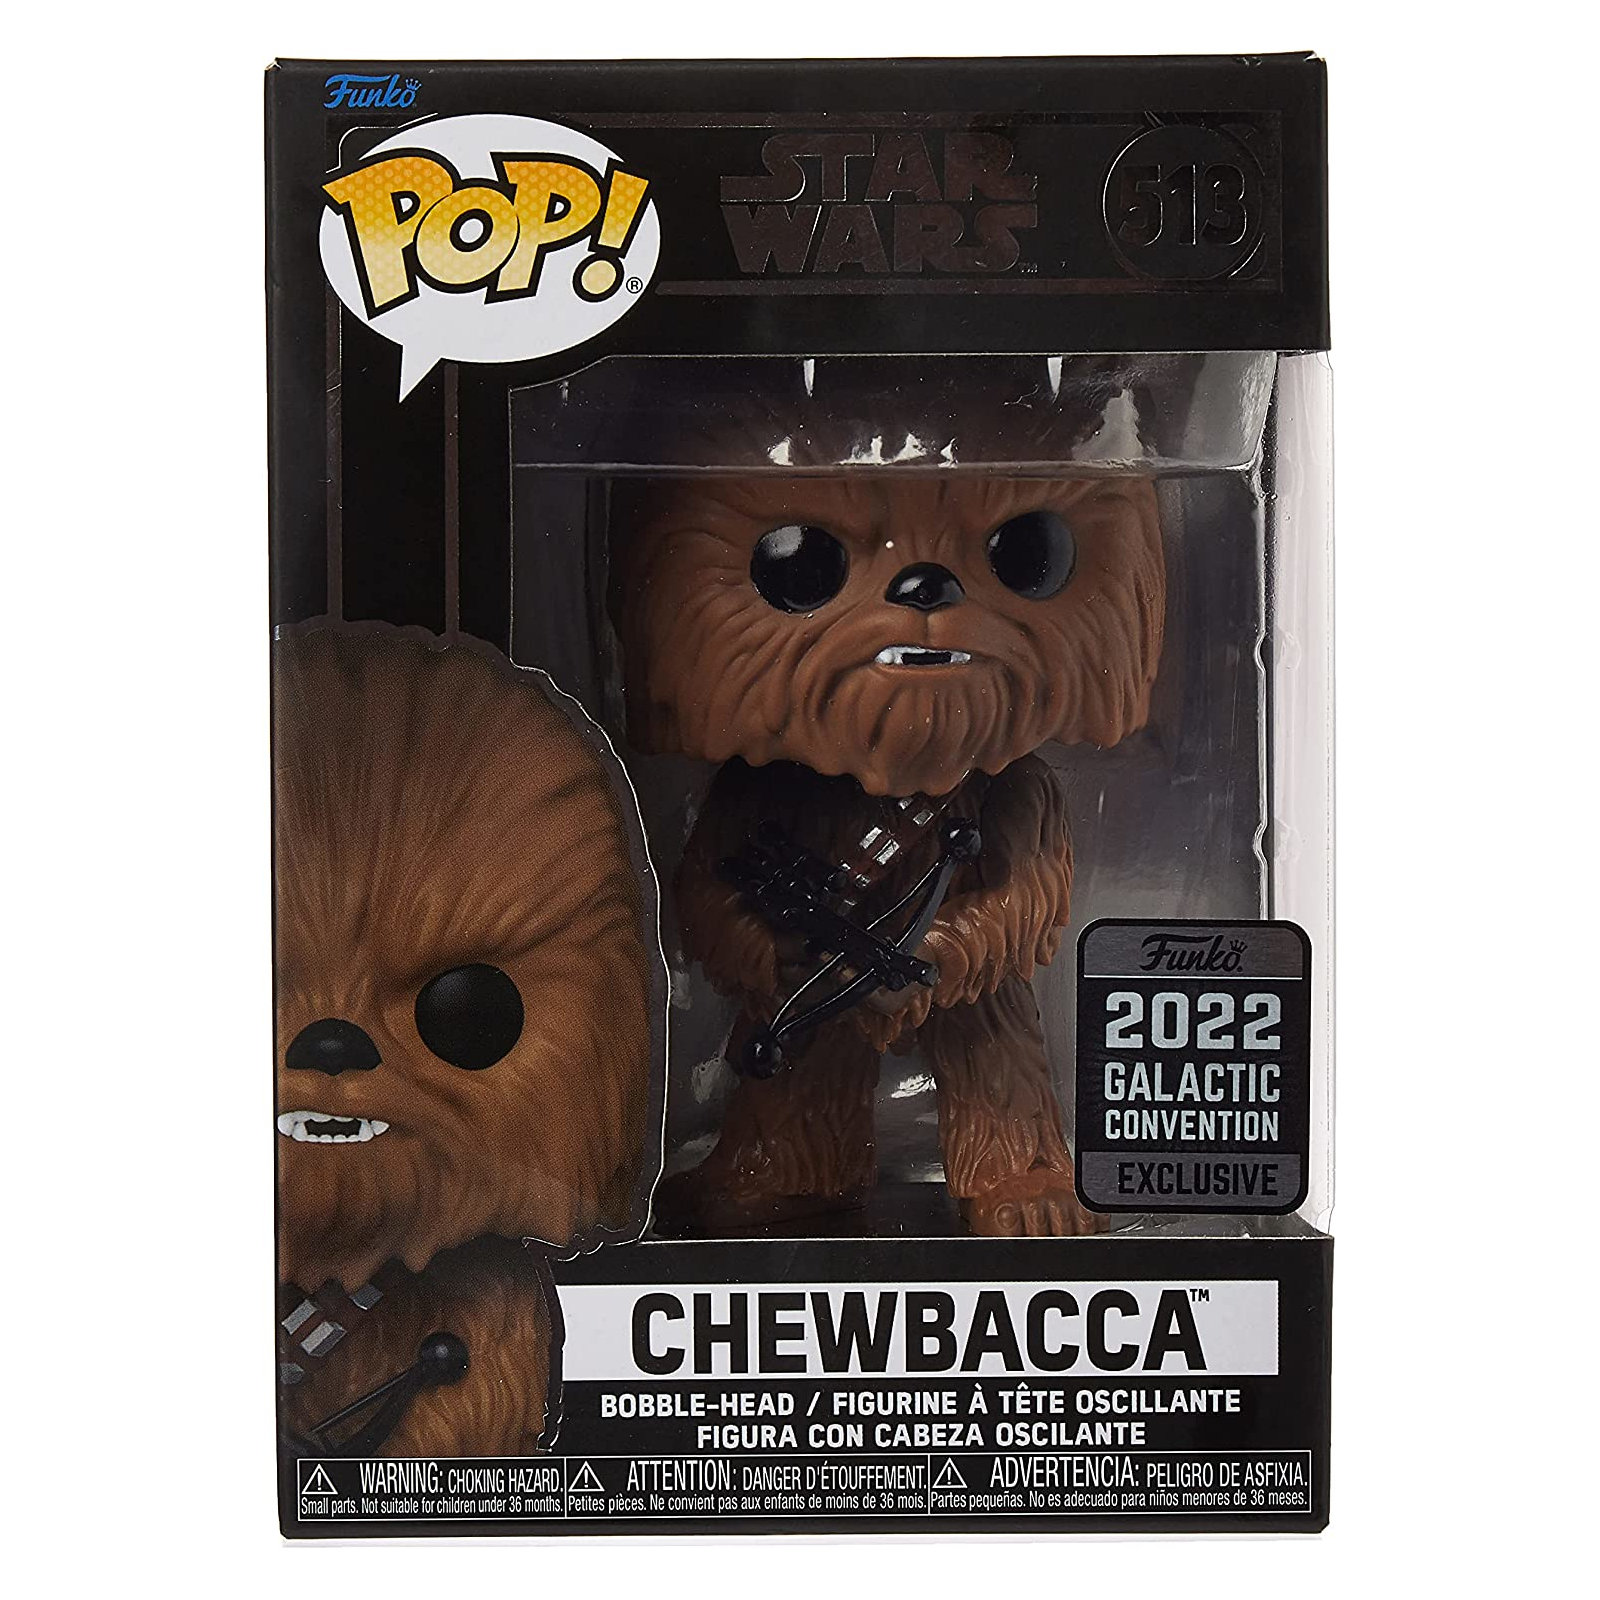 Фигурка Funko Pop! Star Wars Galactic Convention 2022 Exclusive Chewbacca волосатый монстр